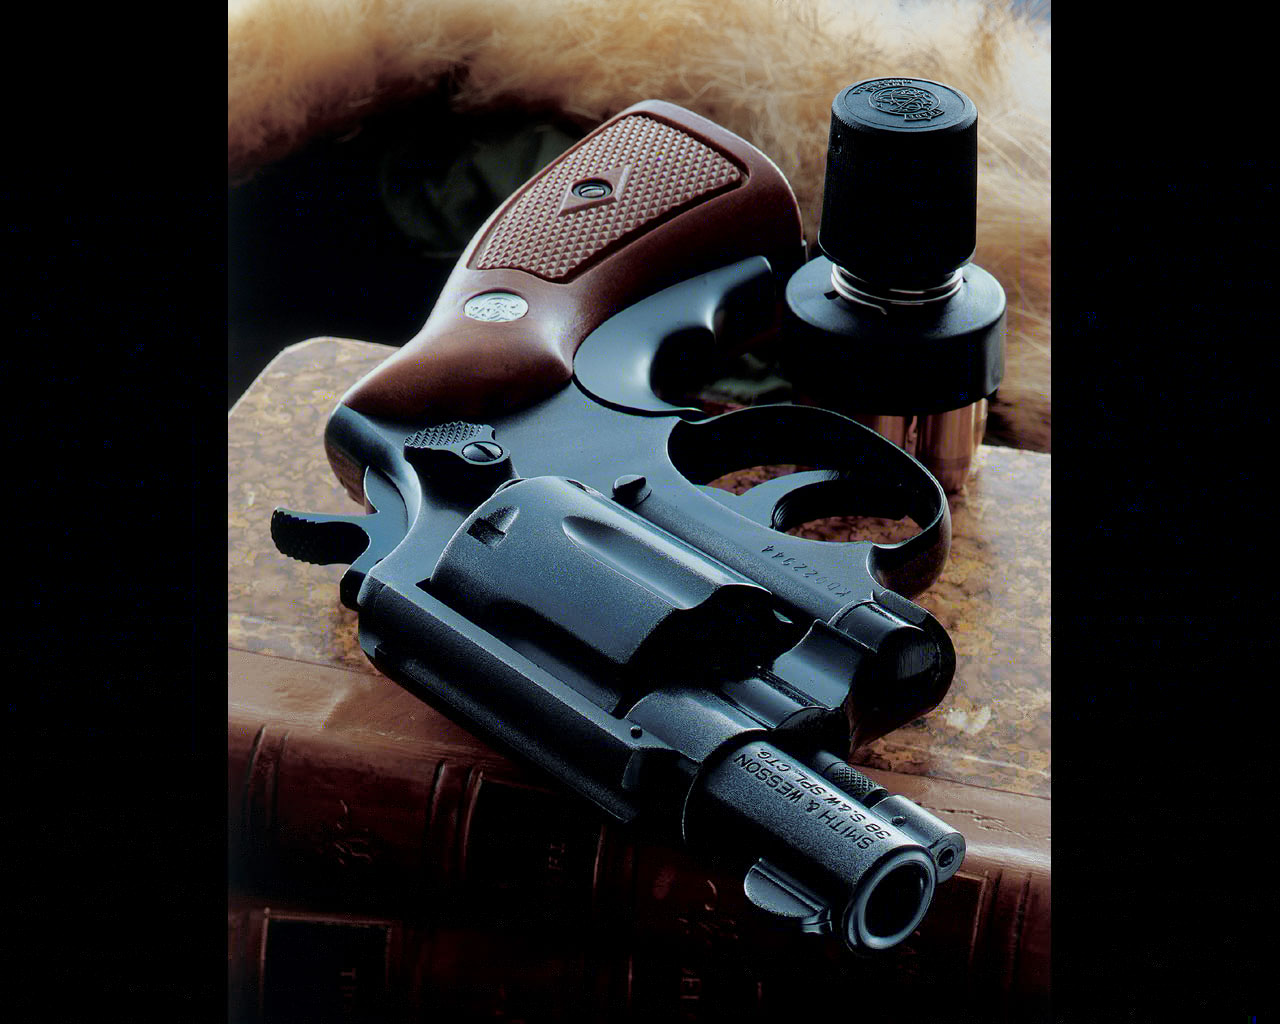 carta da parati 7k,pistola,rivoltella,arma,grilletto,fotografia